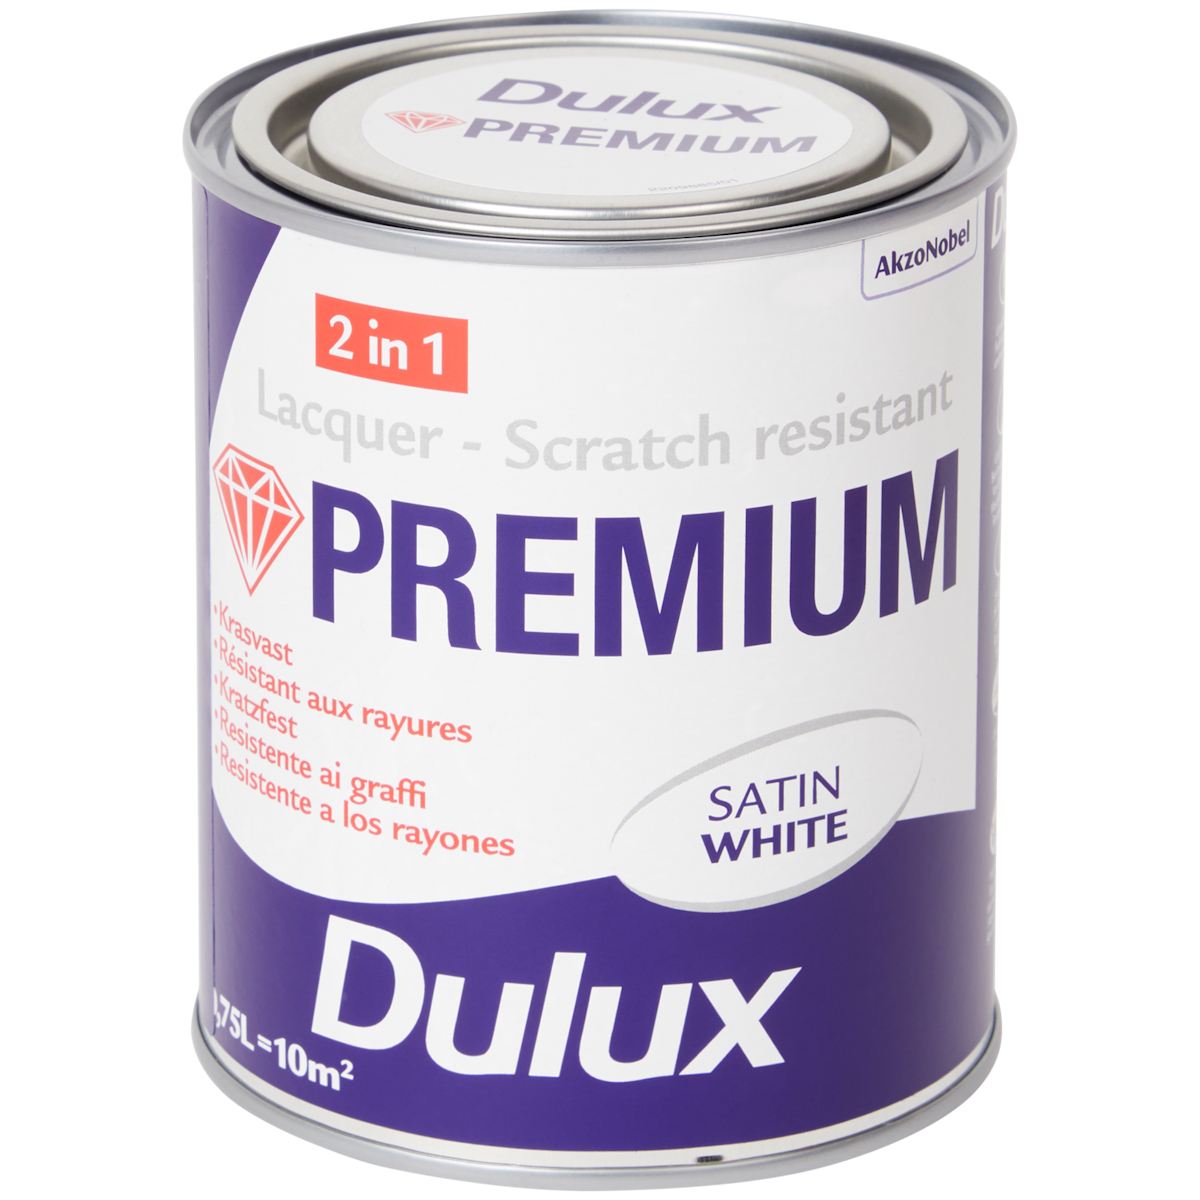 Dulux Premium acryllak satin white